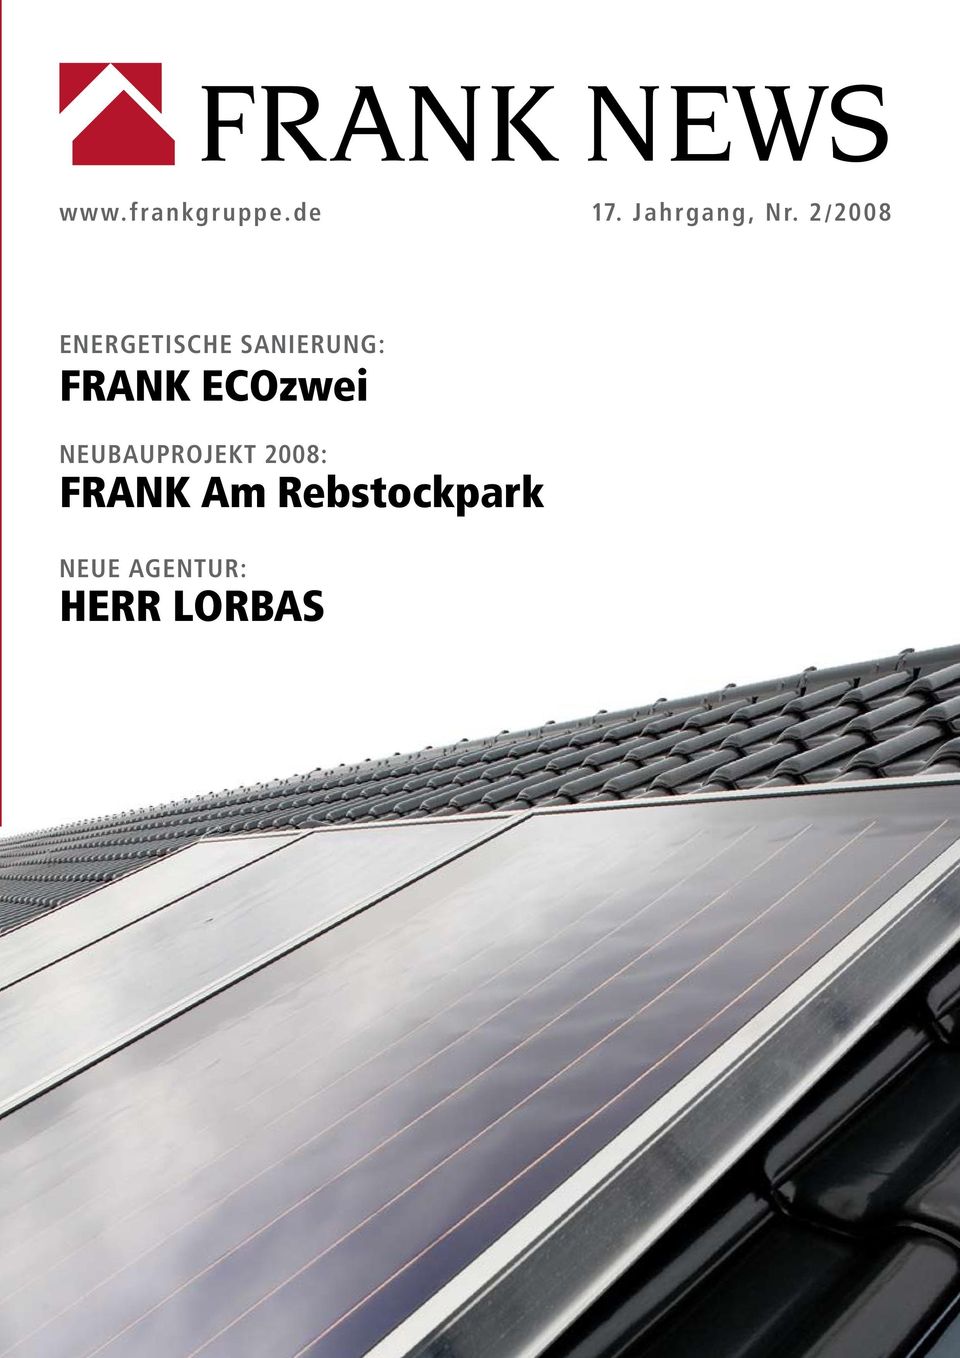 2/2008 Energetische sanierung: FRANK